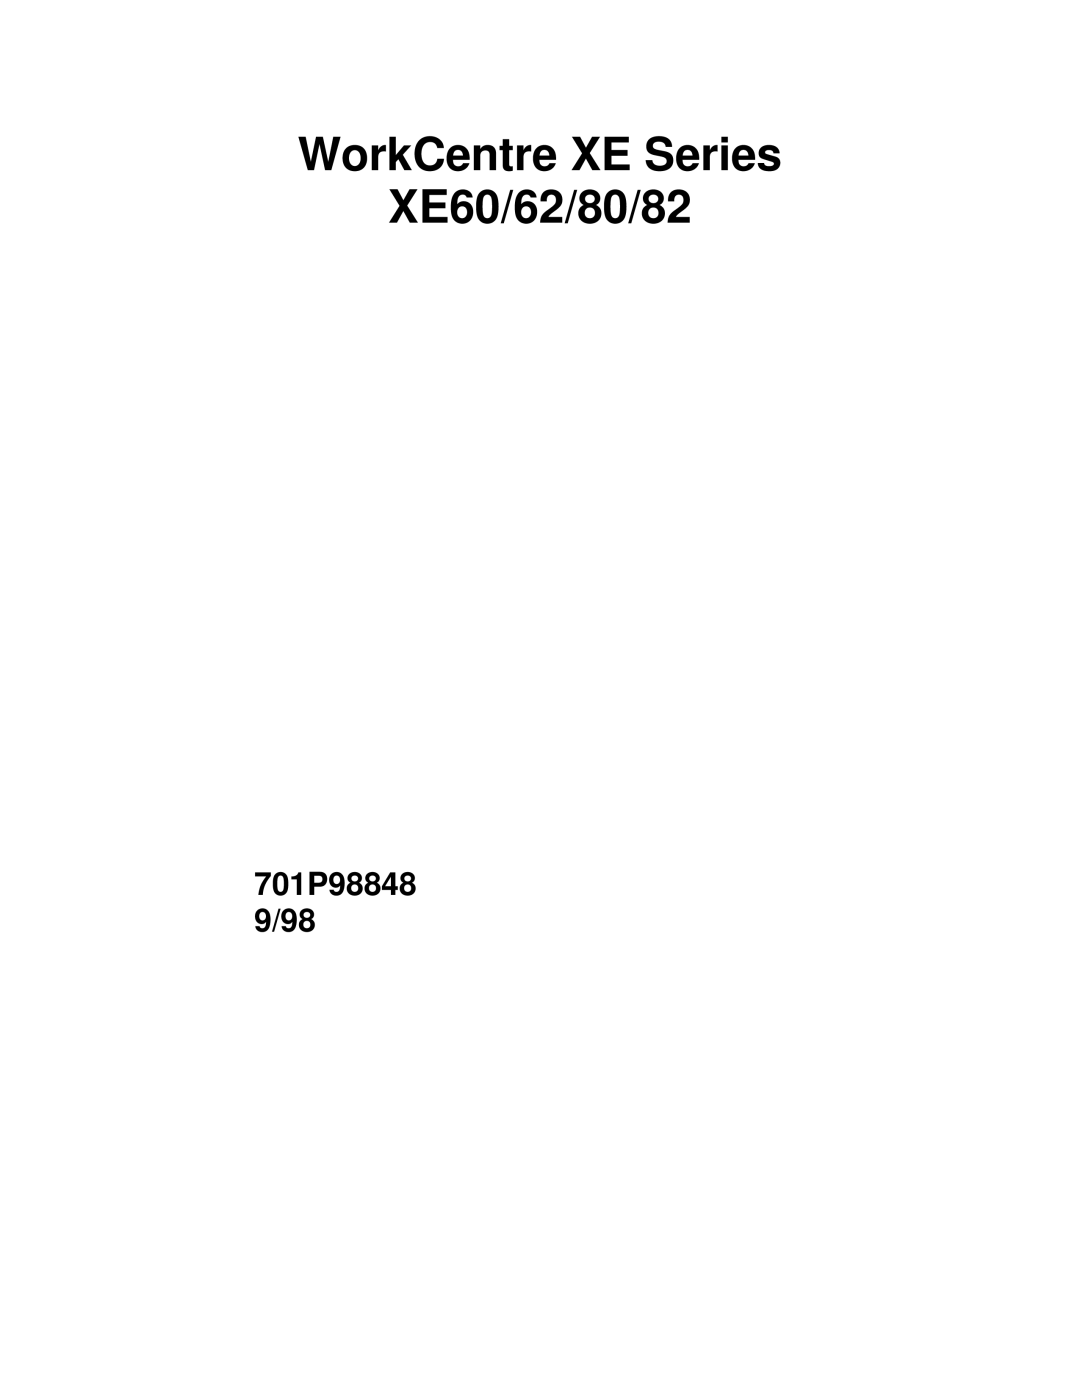 Xerox XE82, XE80, XE62 manual WorkCentre XE Series XE60/62/80/82 